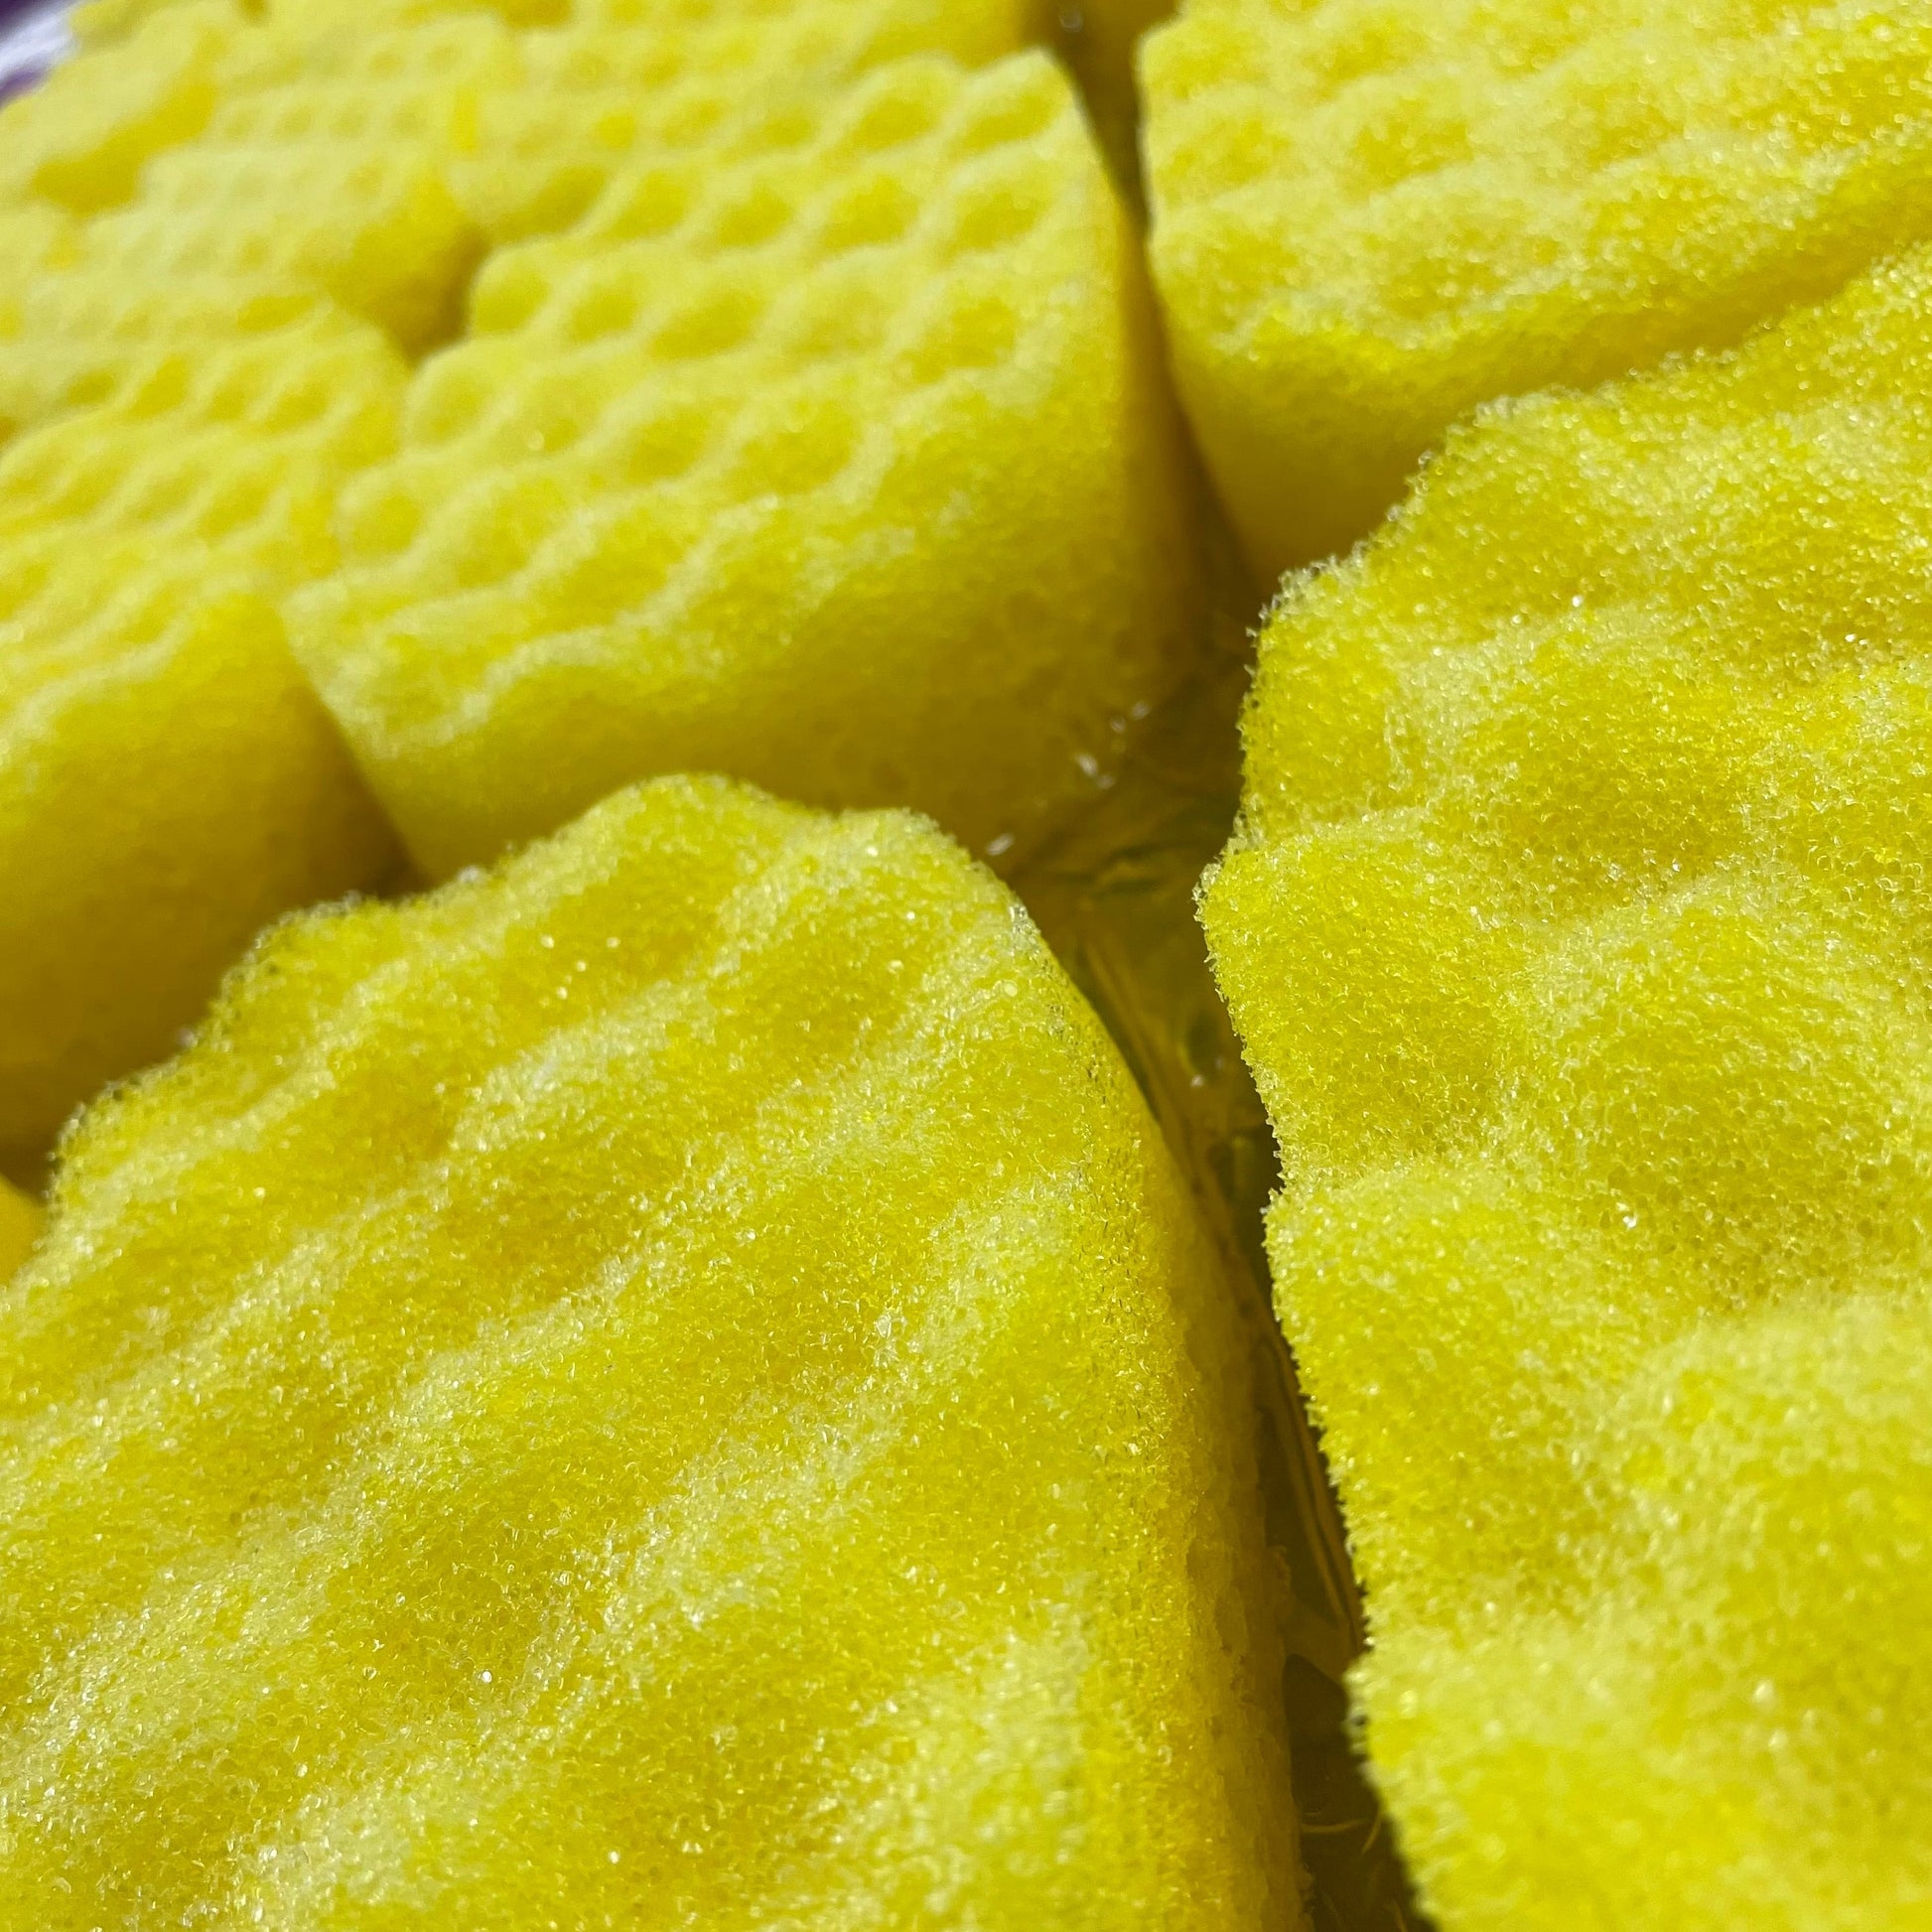 Millionaire Soap Sponges